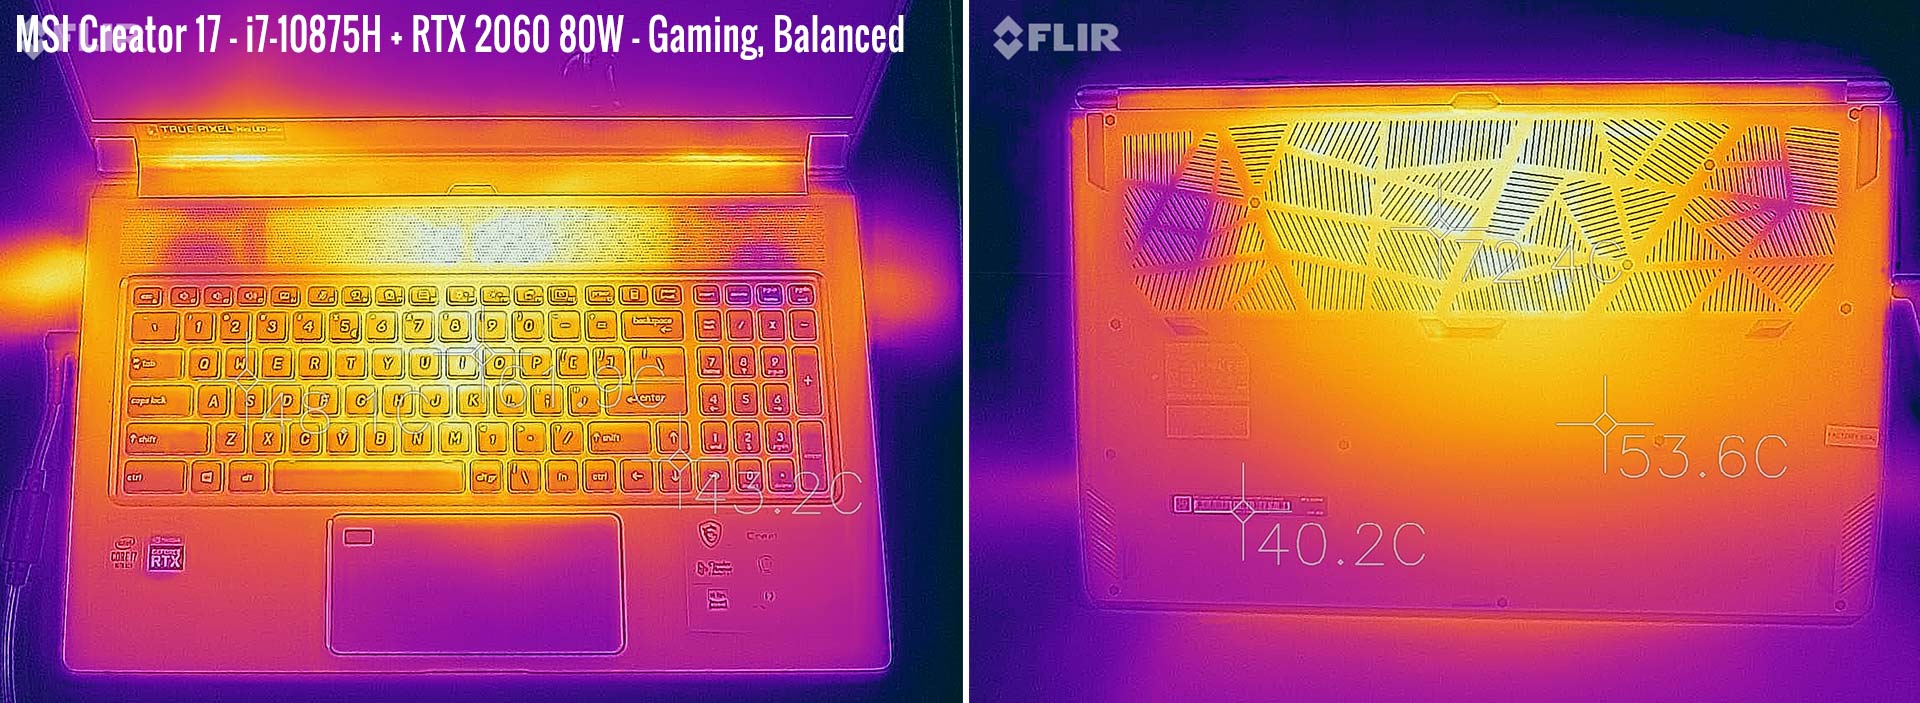 temperatures msi creator17 gaming balanced